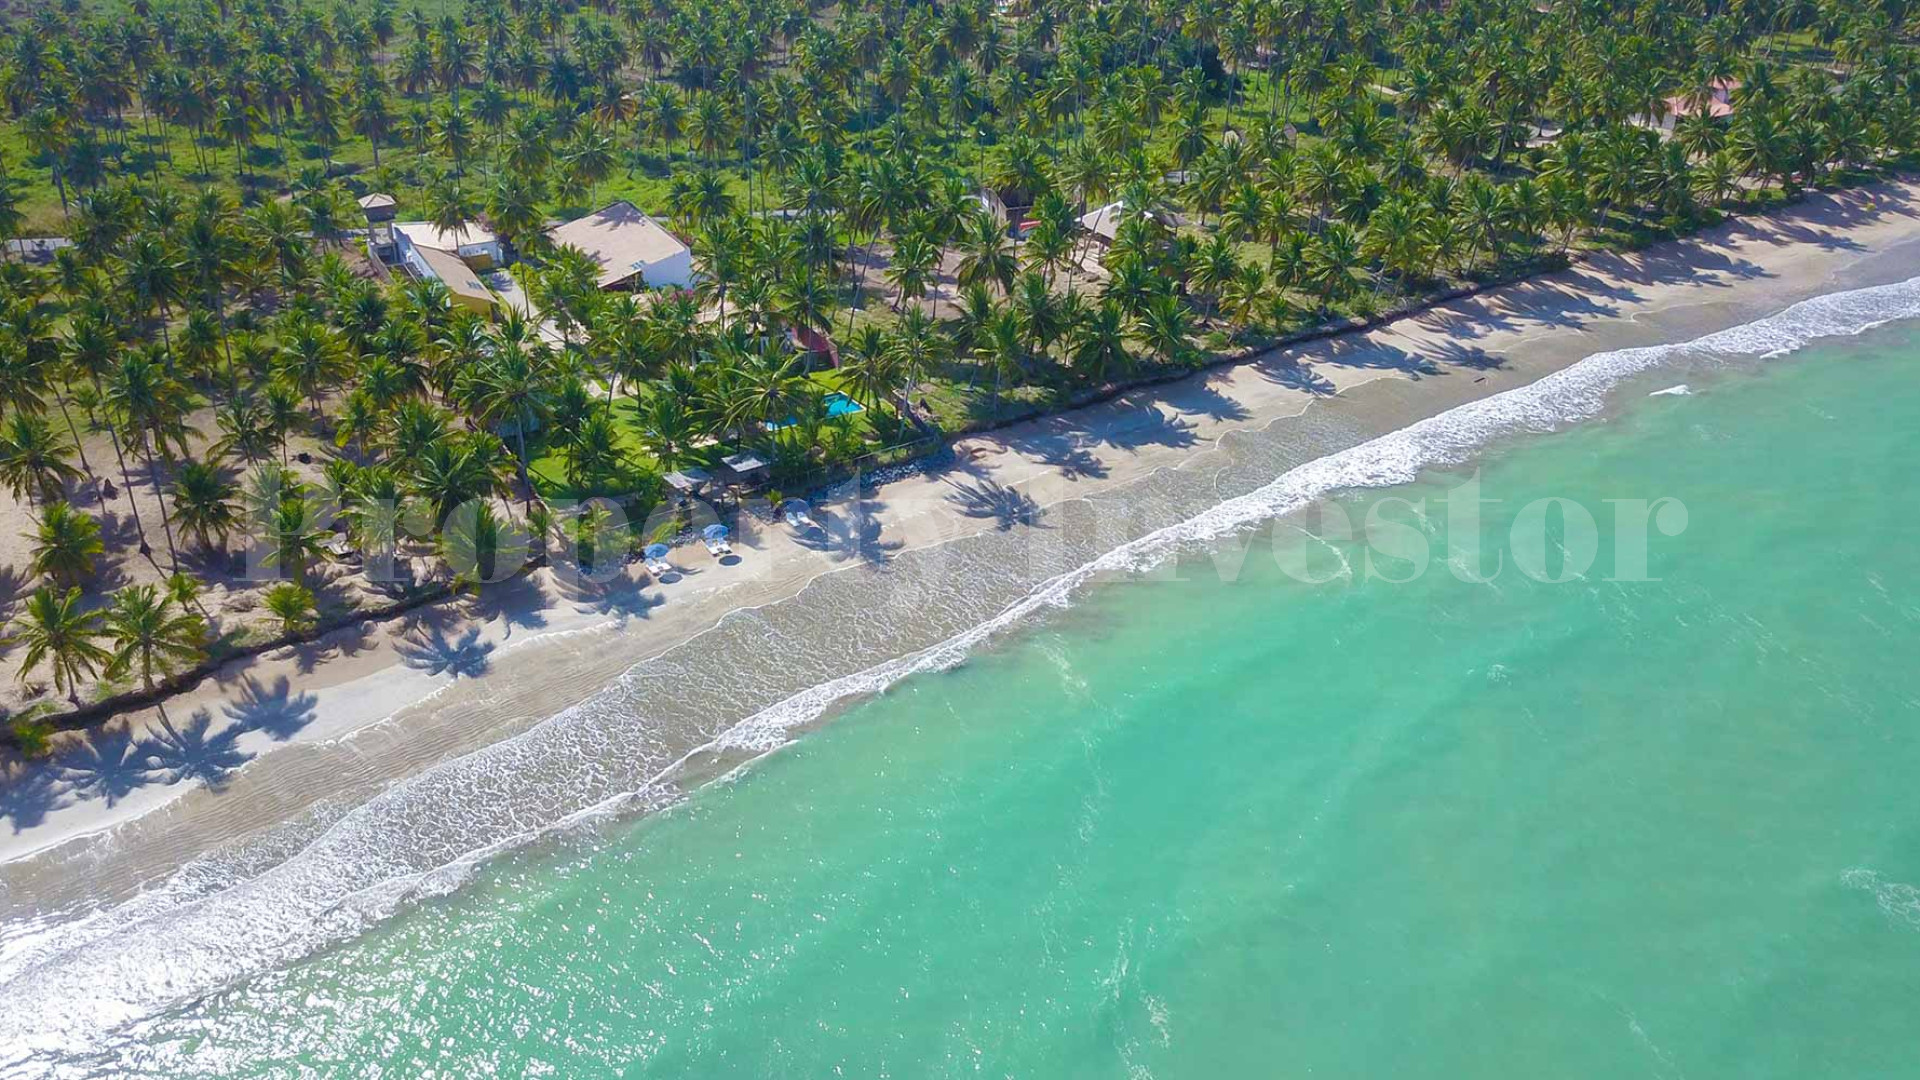 Продаётся красивый бутик-отель из 8 шале и ресторан на пляже в Марагоже, Бразилия